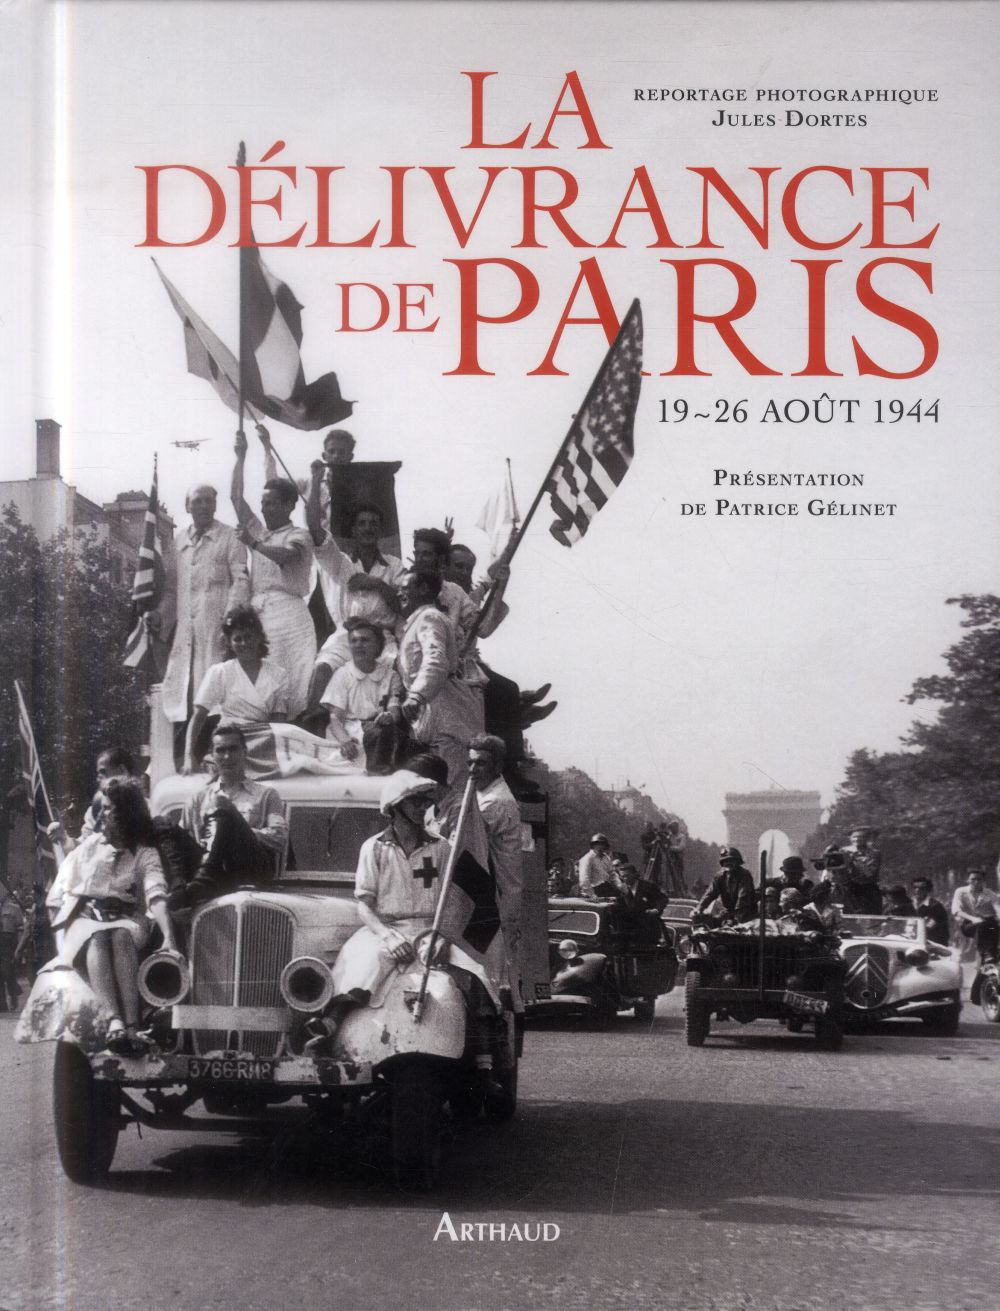 LA DELIVRANCE DE PARIS - 19-26 AOUT 1944